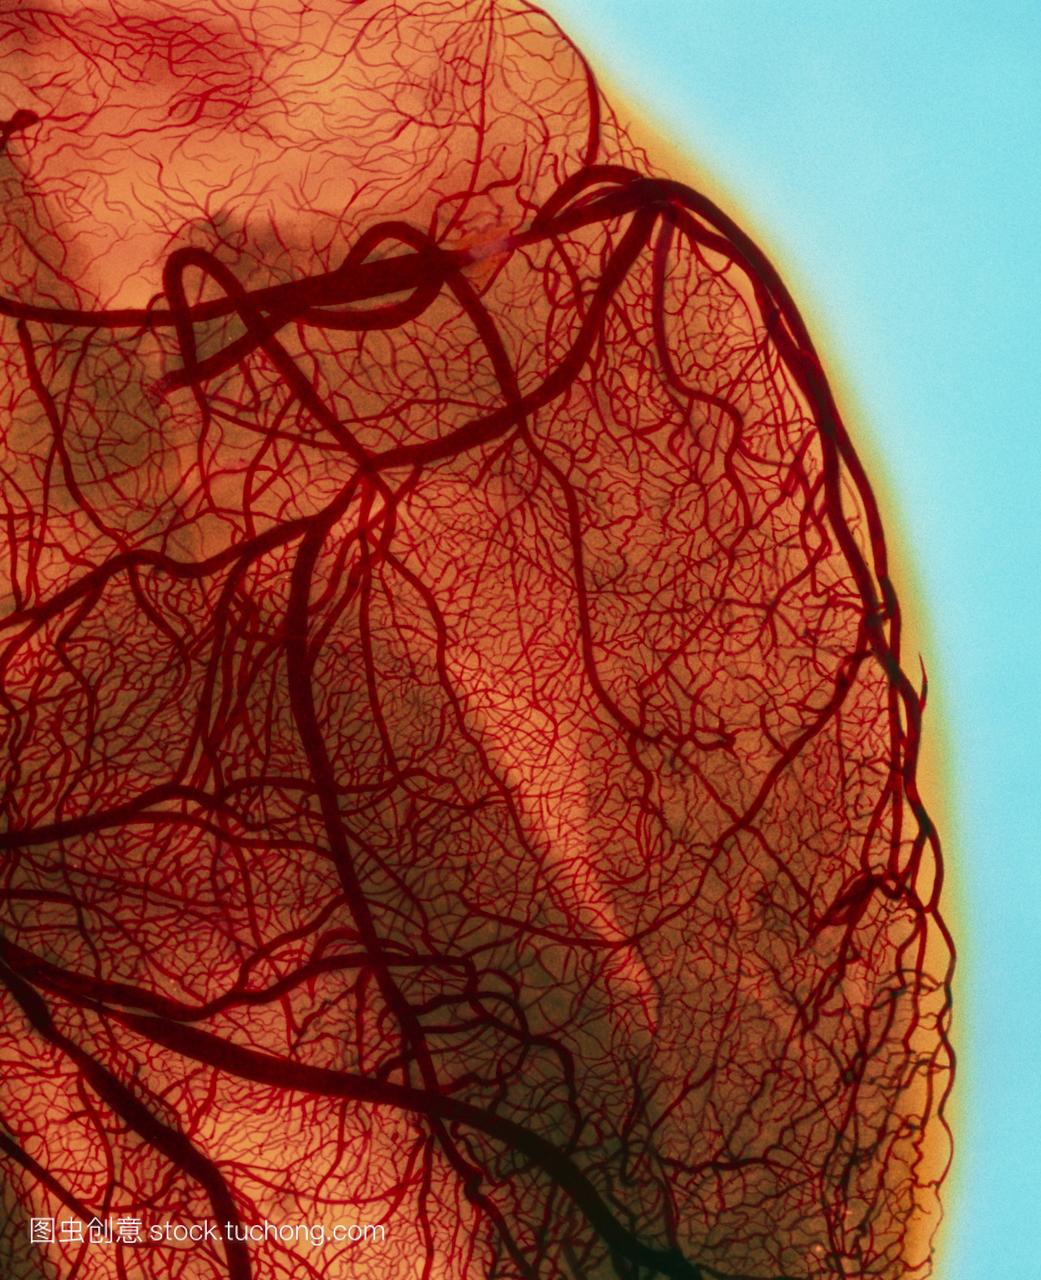 血管造影显示冠状动脉狭窄阻塞,动脉是血液供